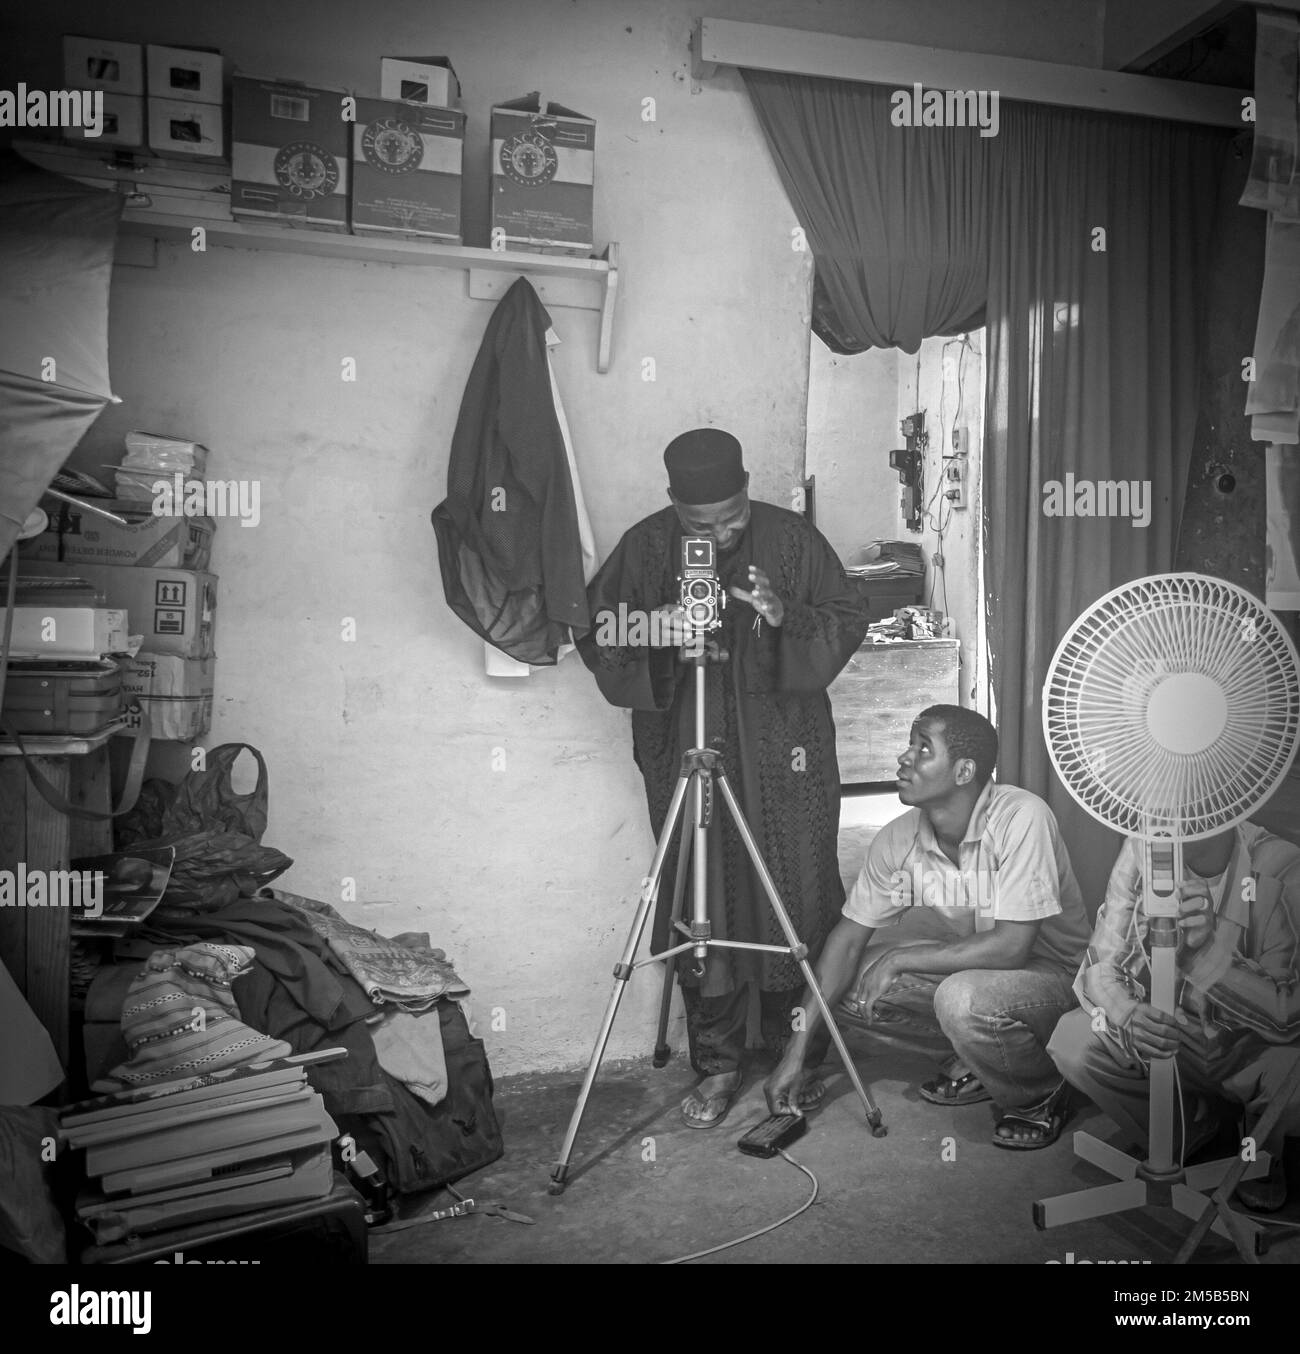 Malick Sidibé prenant des photos dans son studio , Bamako, Mali Banque D'Images